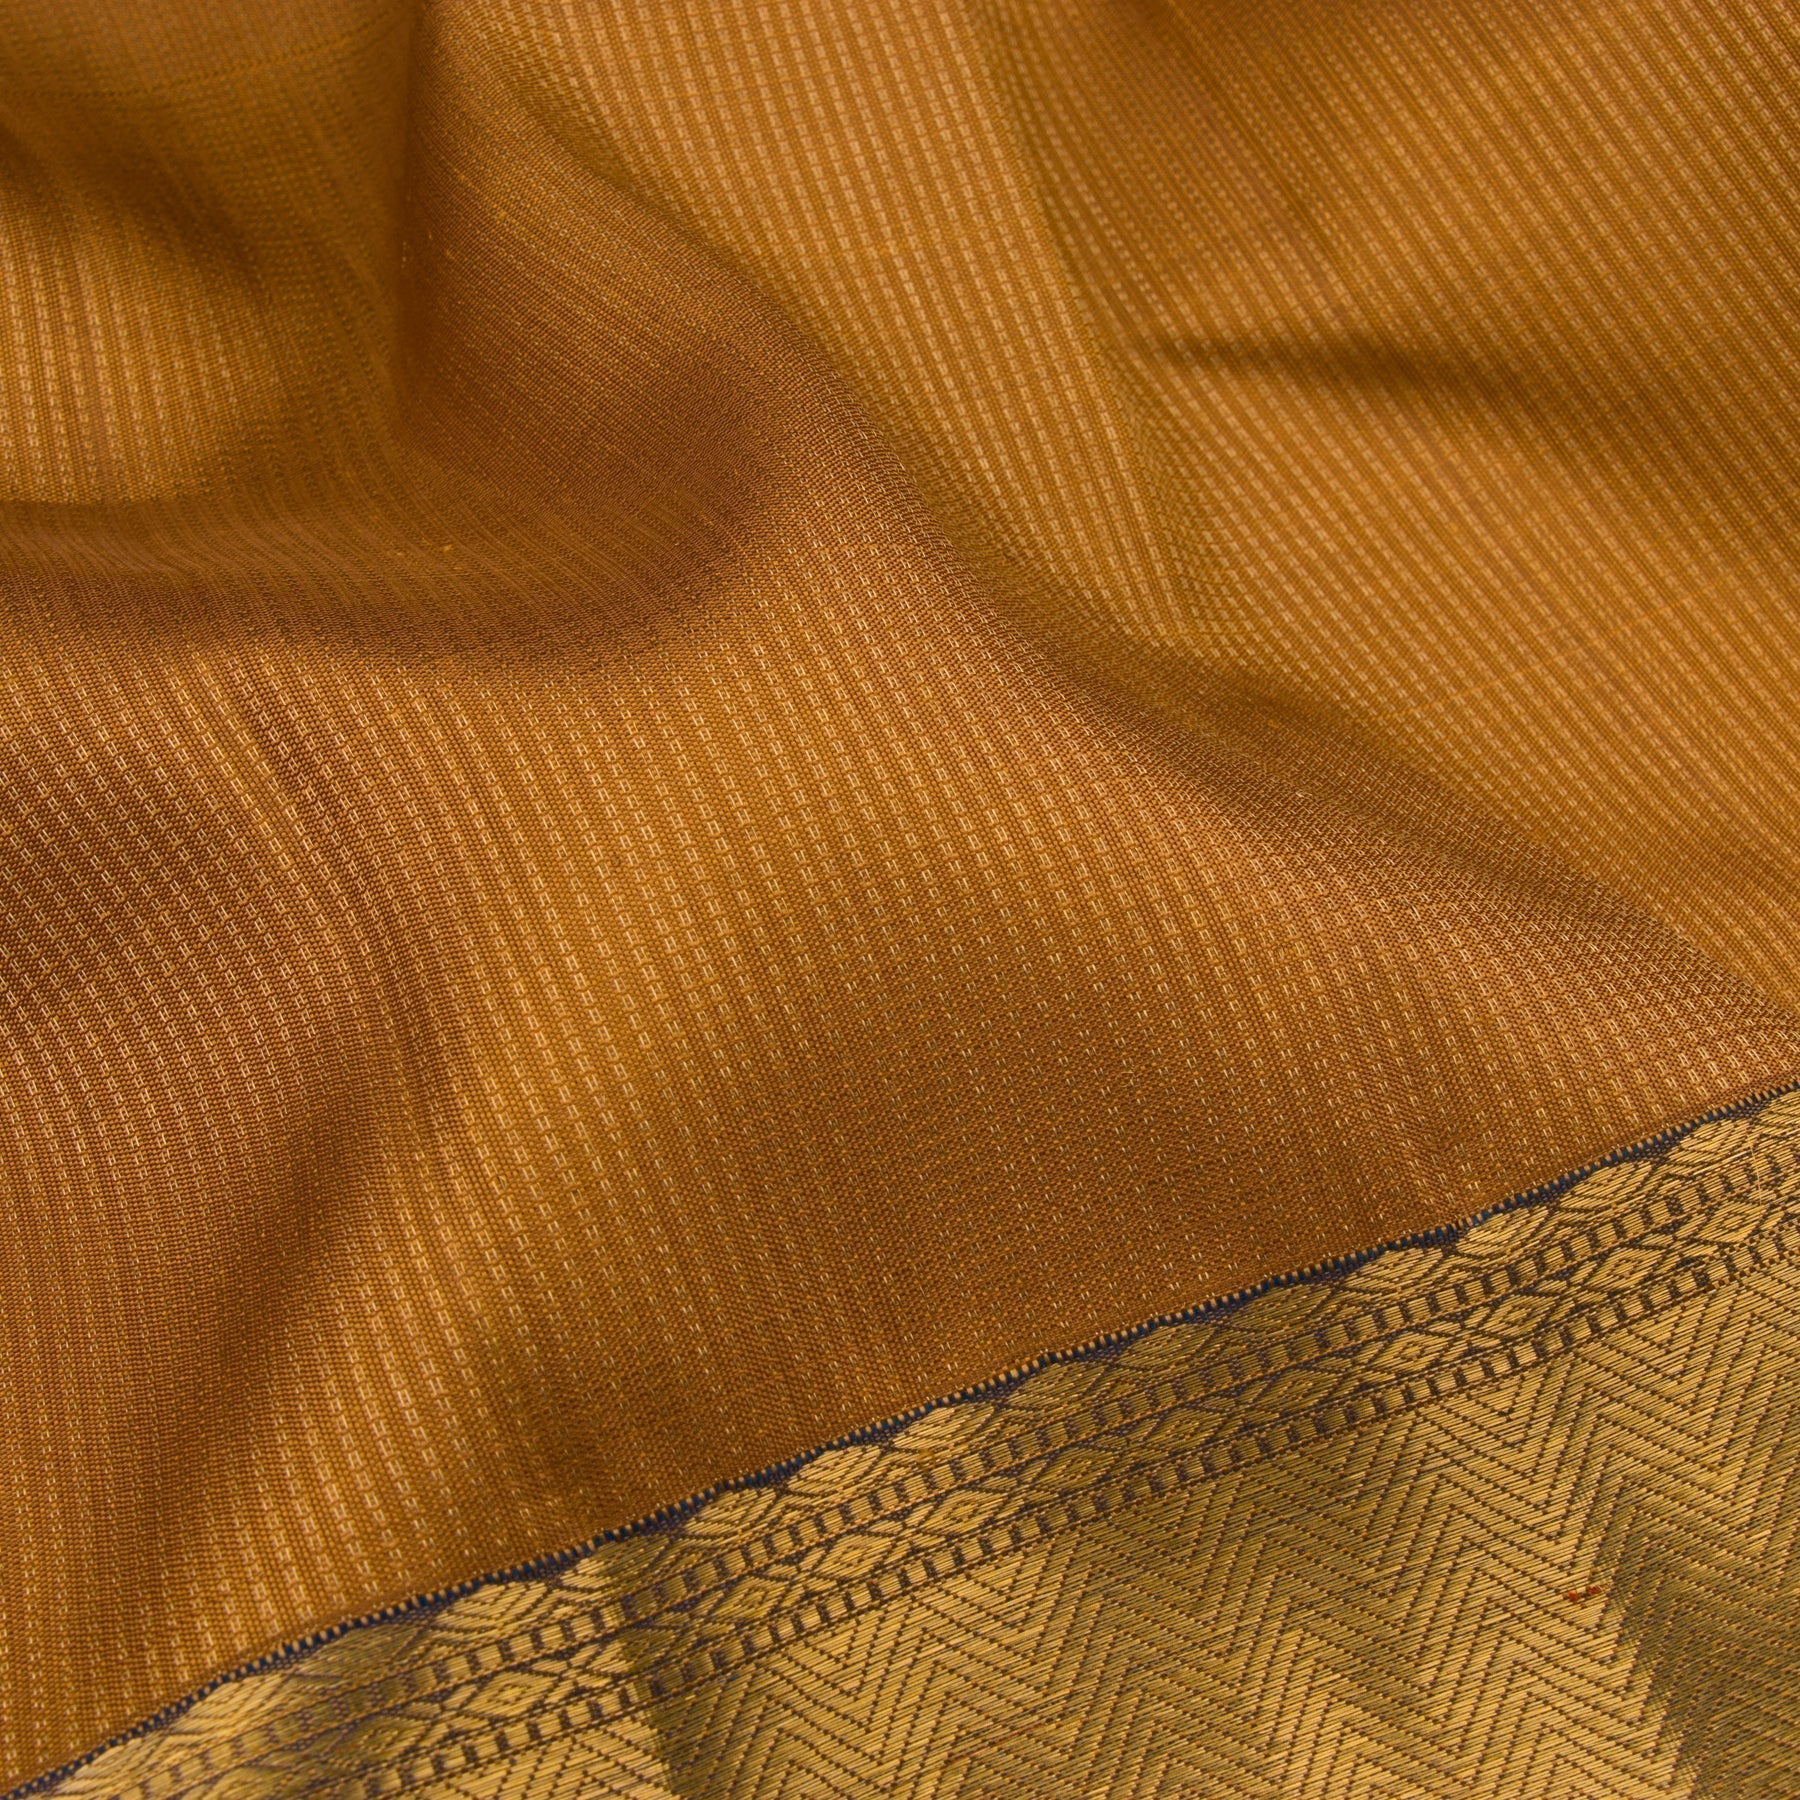 Kanakavalli Kanjivaram Silk Sari 22-599-HS001-13066 - Fabric View